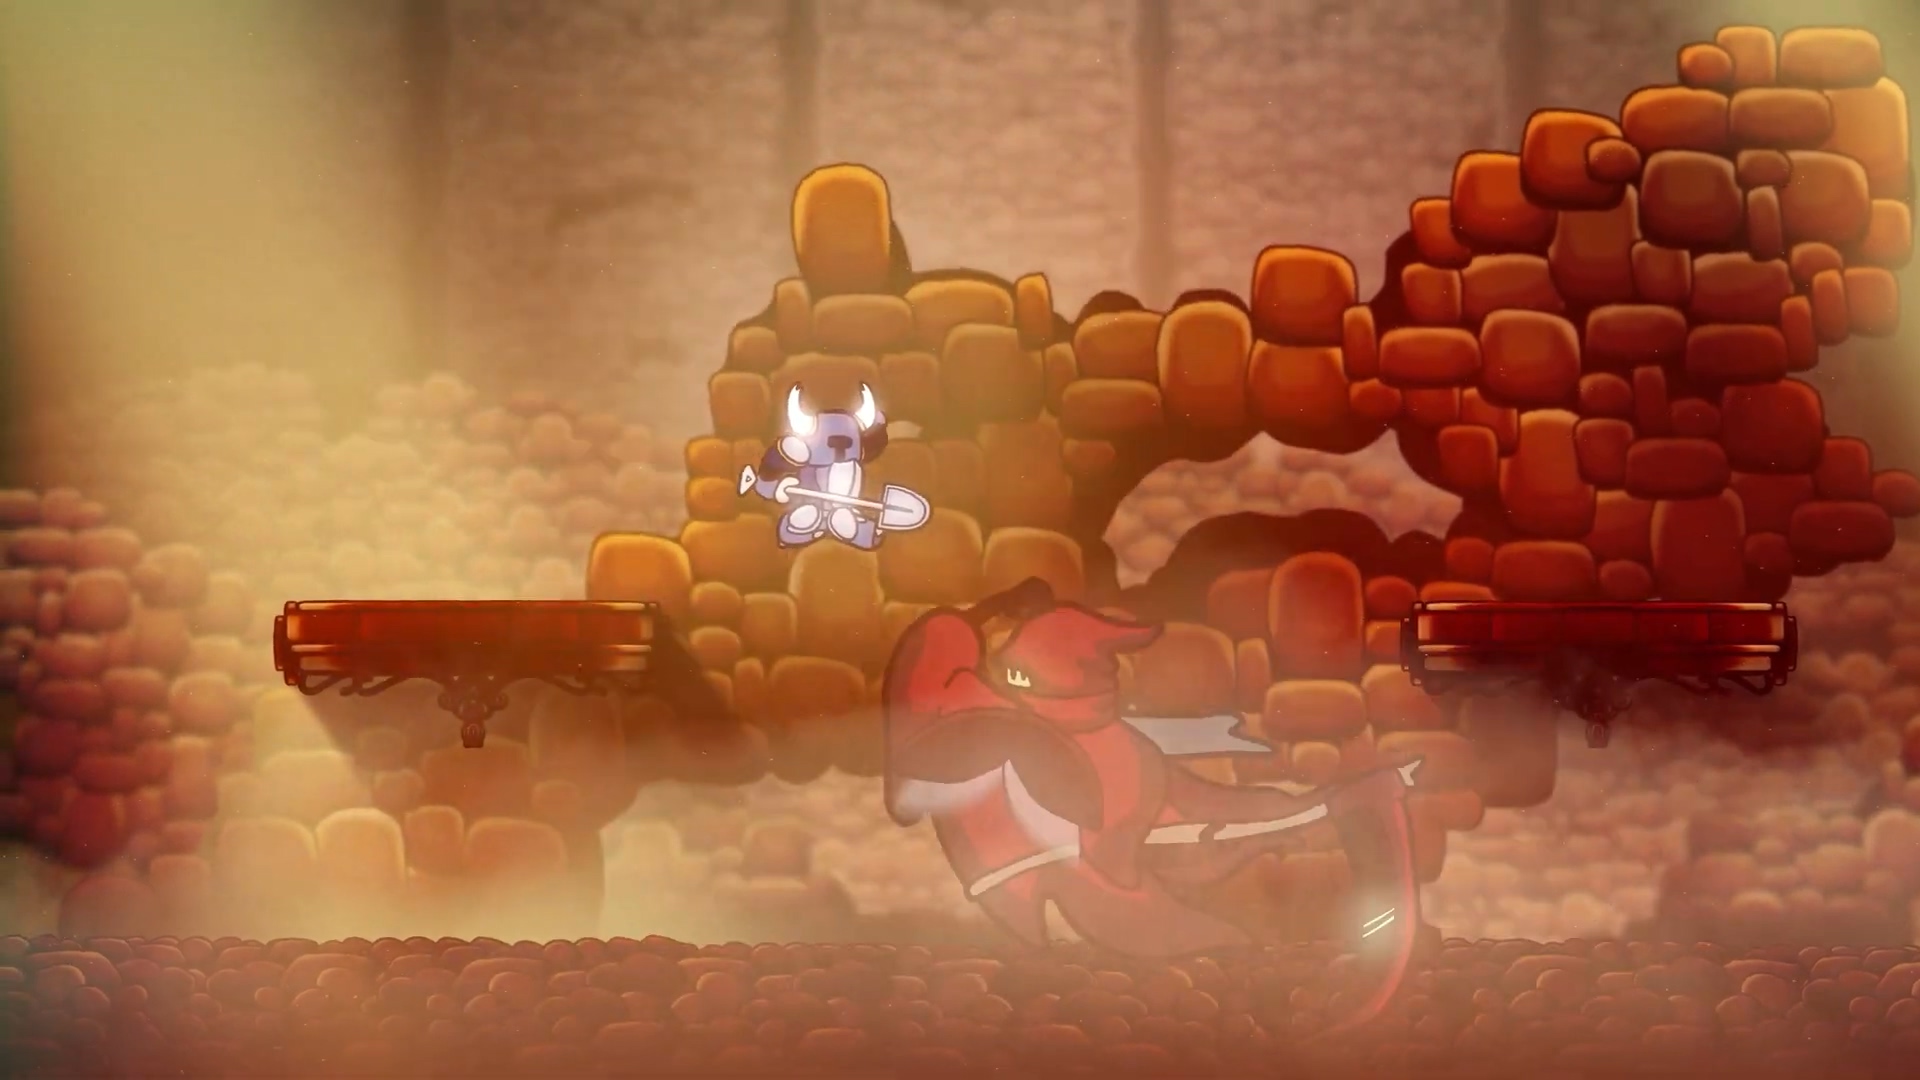 粉丝制作有爱动画 假如《铲子骑士》穿越到其他游戏